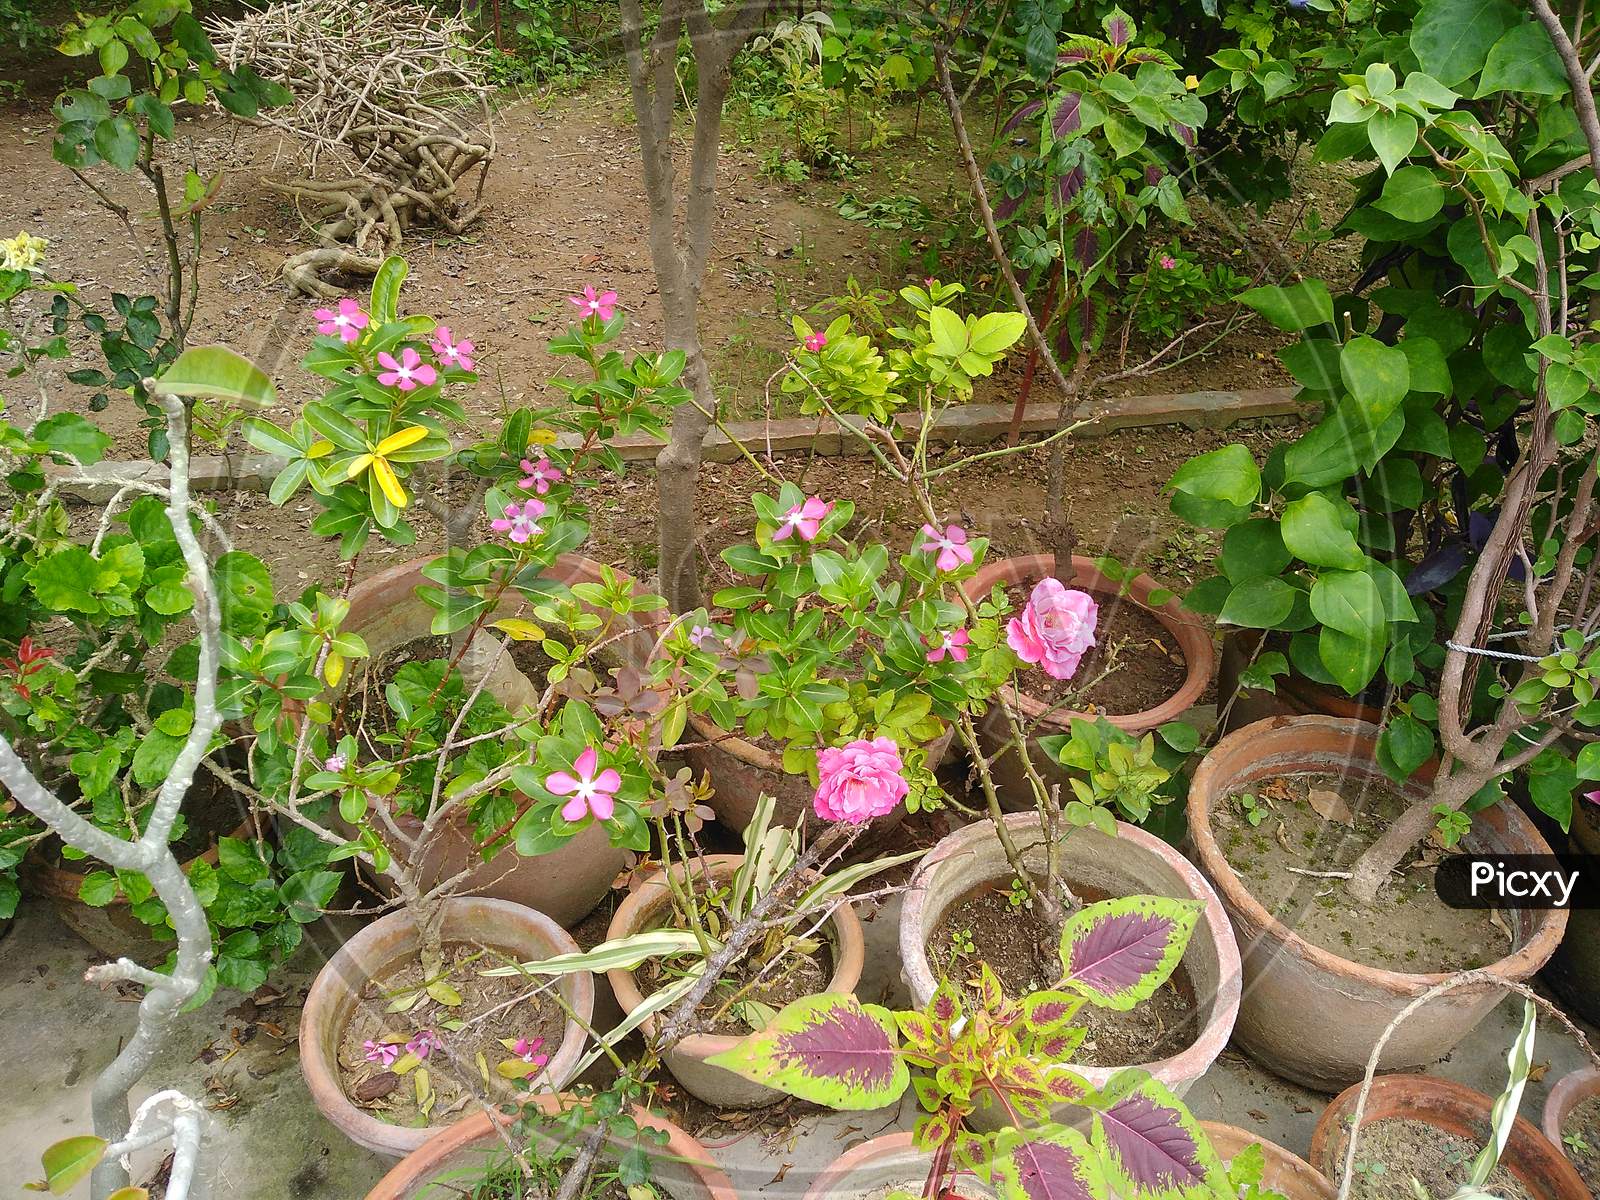 Plants in the Nursery